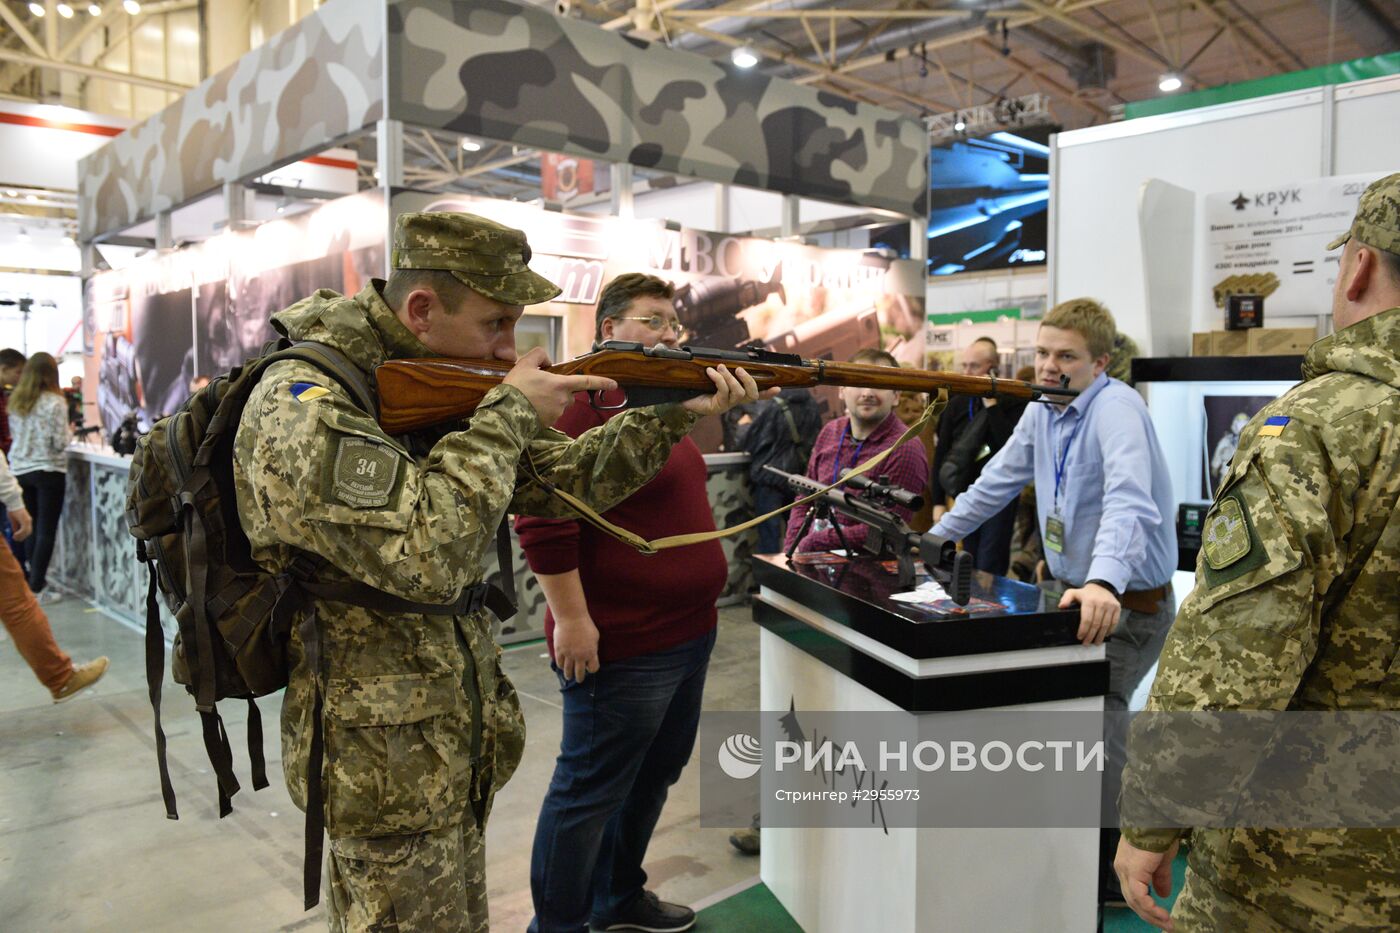 Международная выставка "Оружие и безопасность 2016" в Киеве